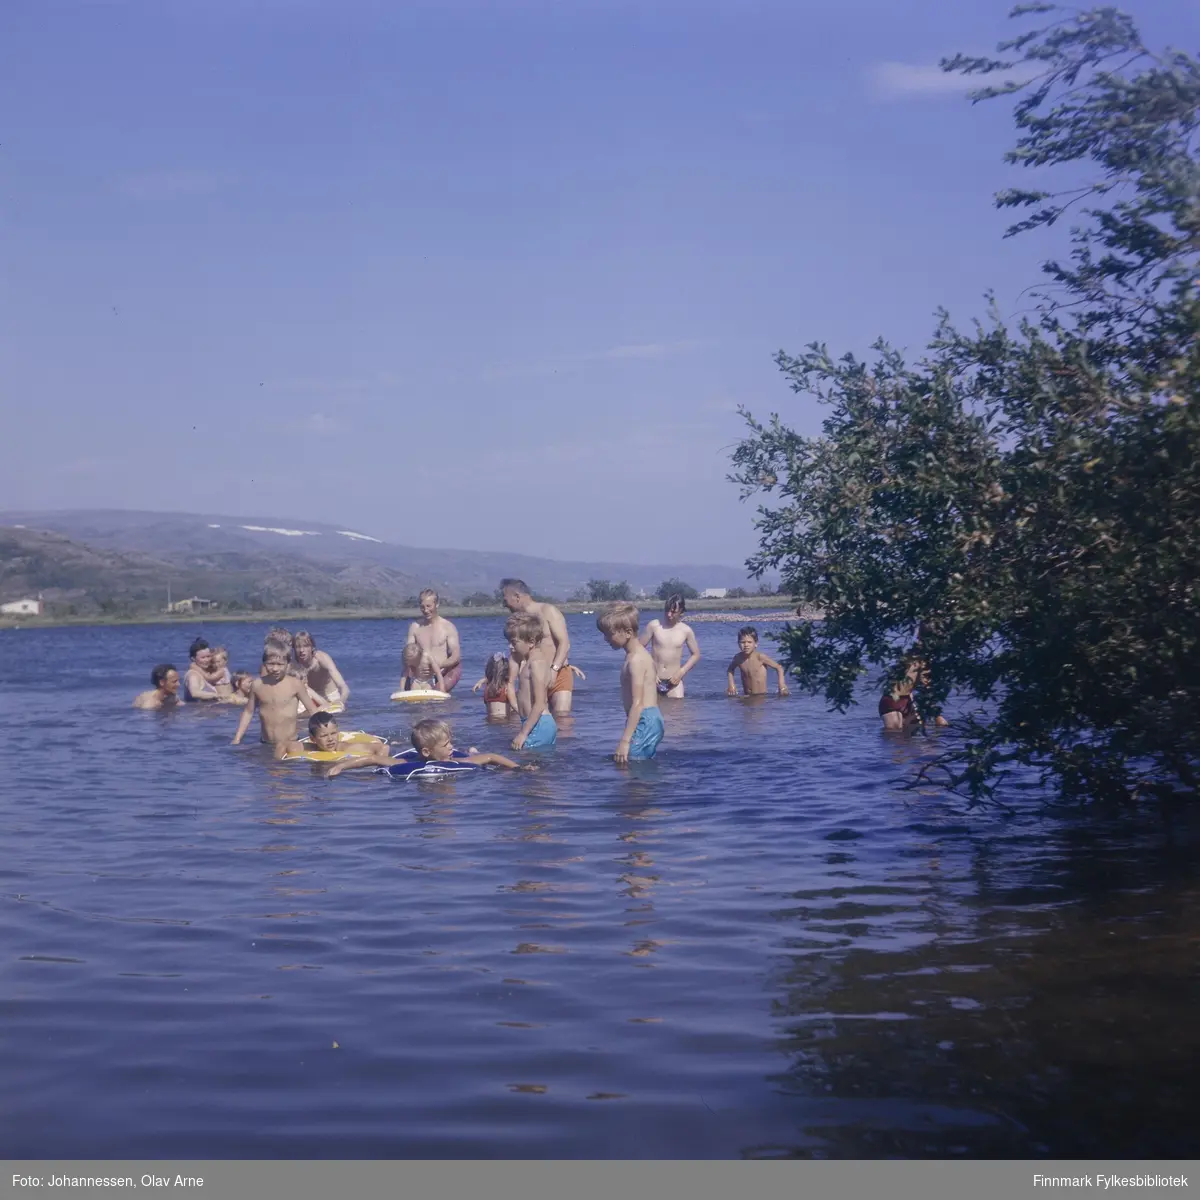 Foto av barn og voksne som bader i Jovatn i Båtsfjord

Mann helt til venstre er Eilif, og kvinnen med siden var Astrid Eriksen med datter (Irene eller Inger, usikker identifisering)

Foto trolig tatt på 1960/70-tallet